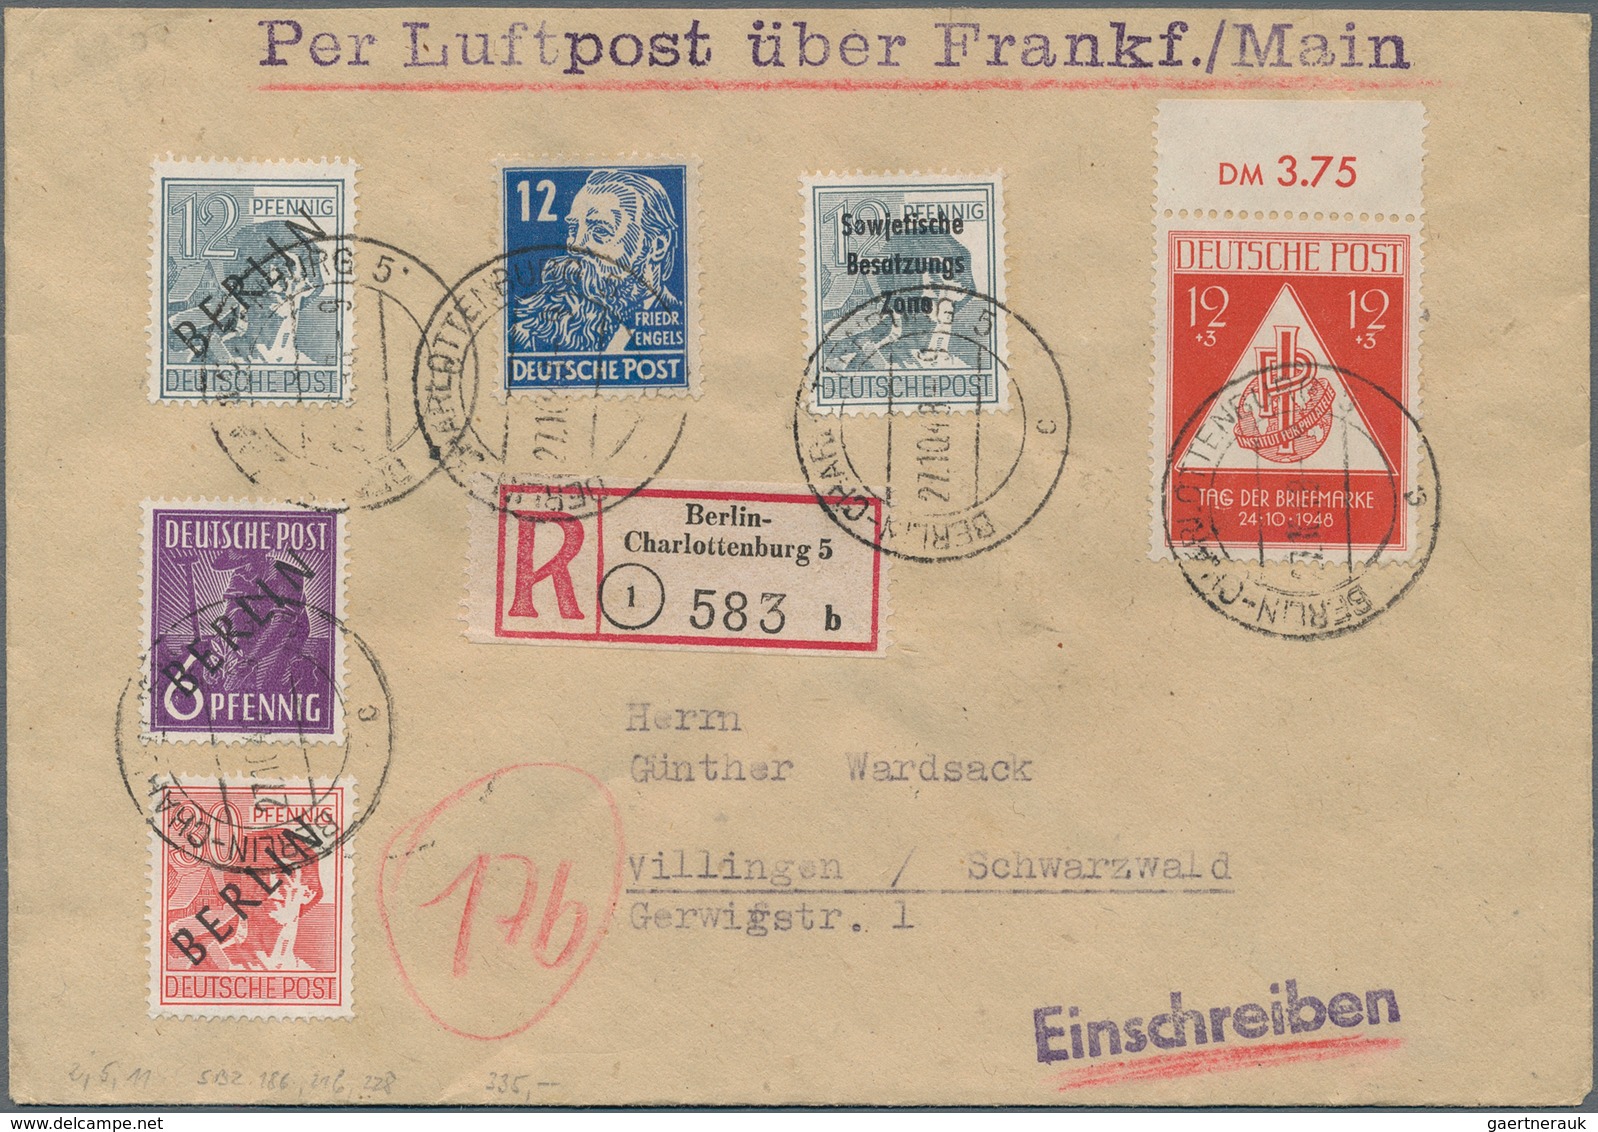 Deutschland nach 1945: 1945 ab, reichhaltiger Sammlungsbestand mit über 600 Belegen, dabei Post aus